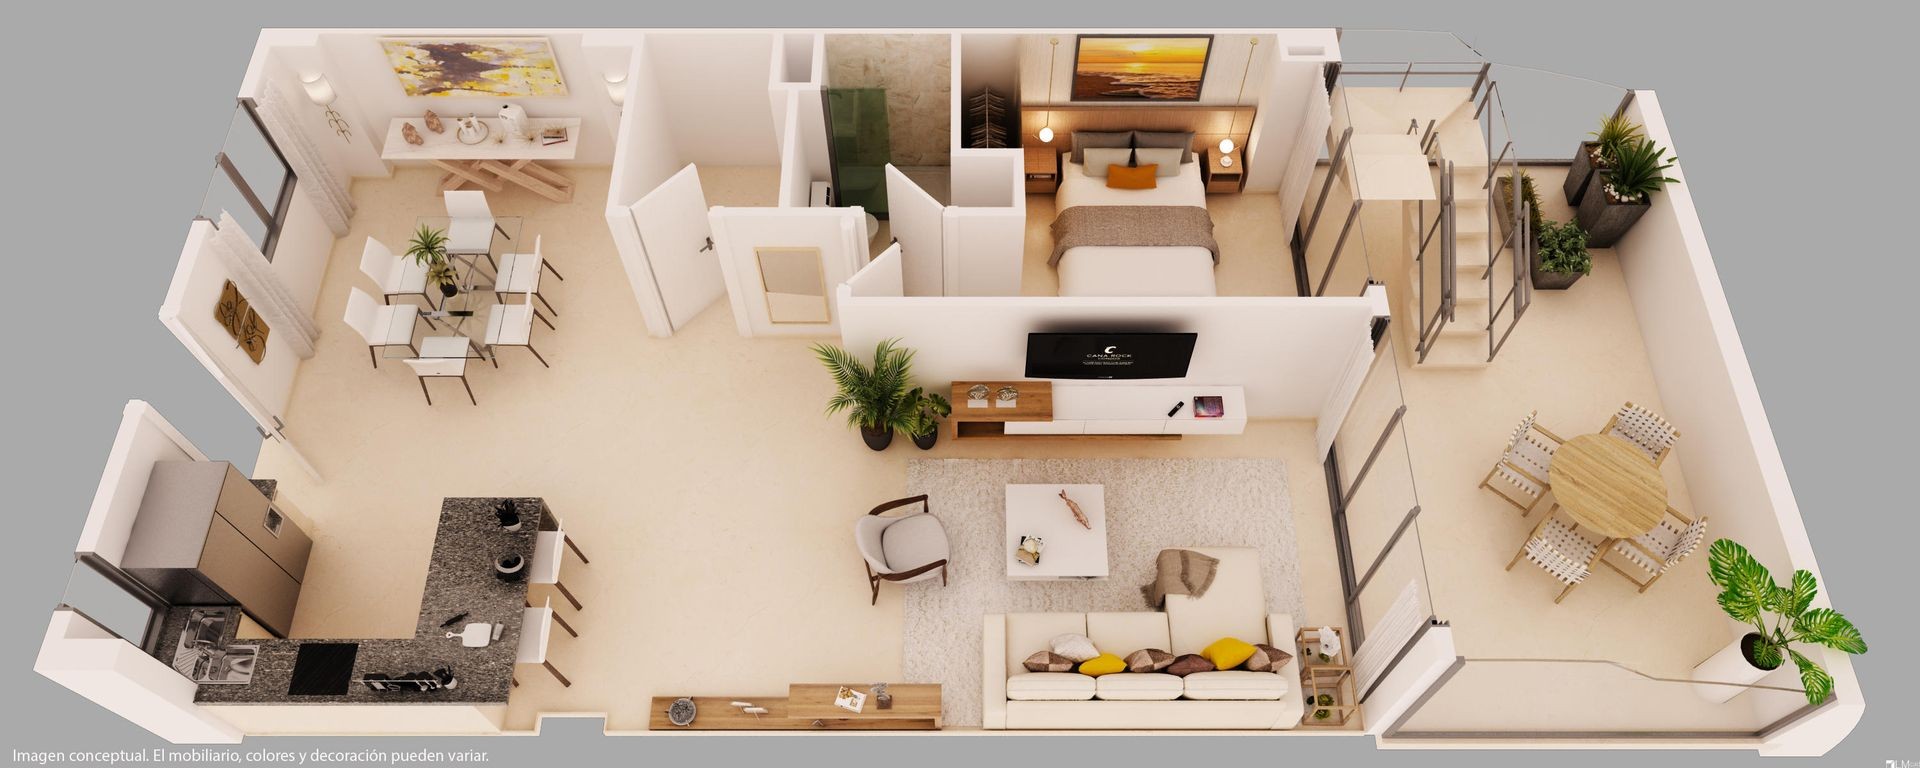 apartamentos - apartamento  diseñado para disfrutar a plenitud del lujo 4